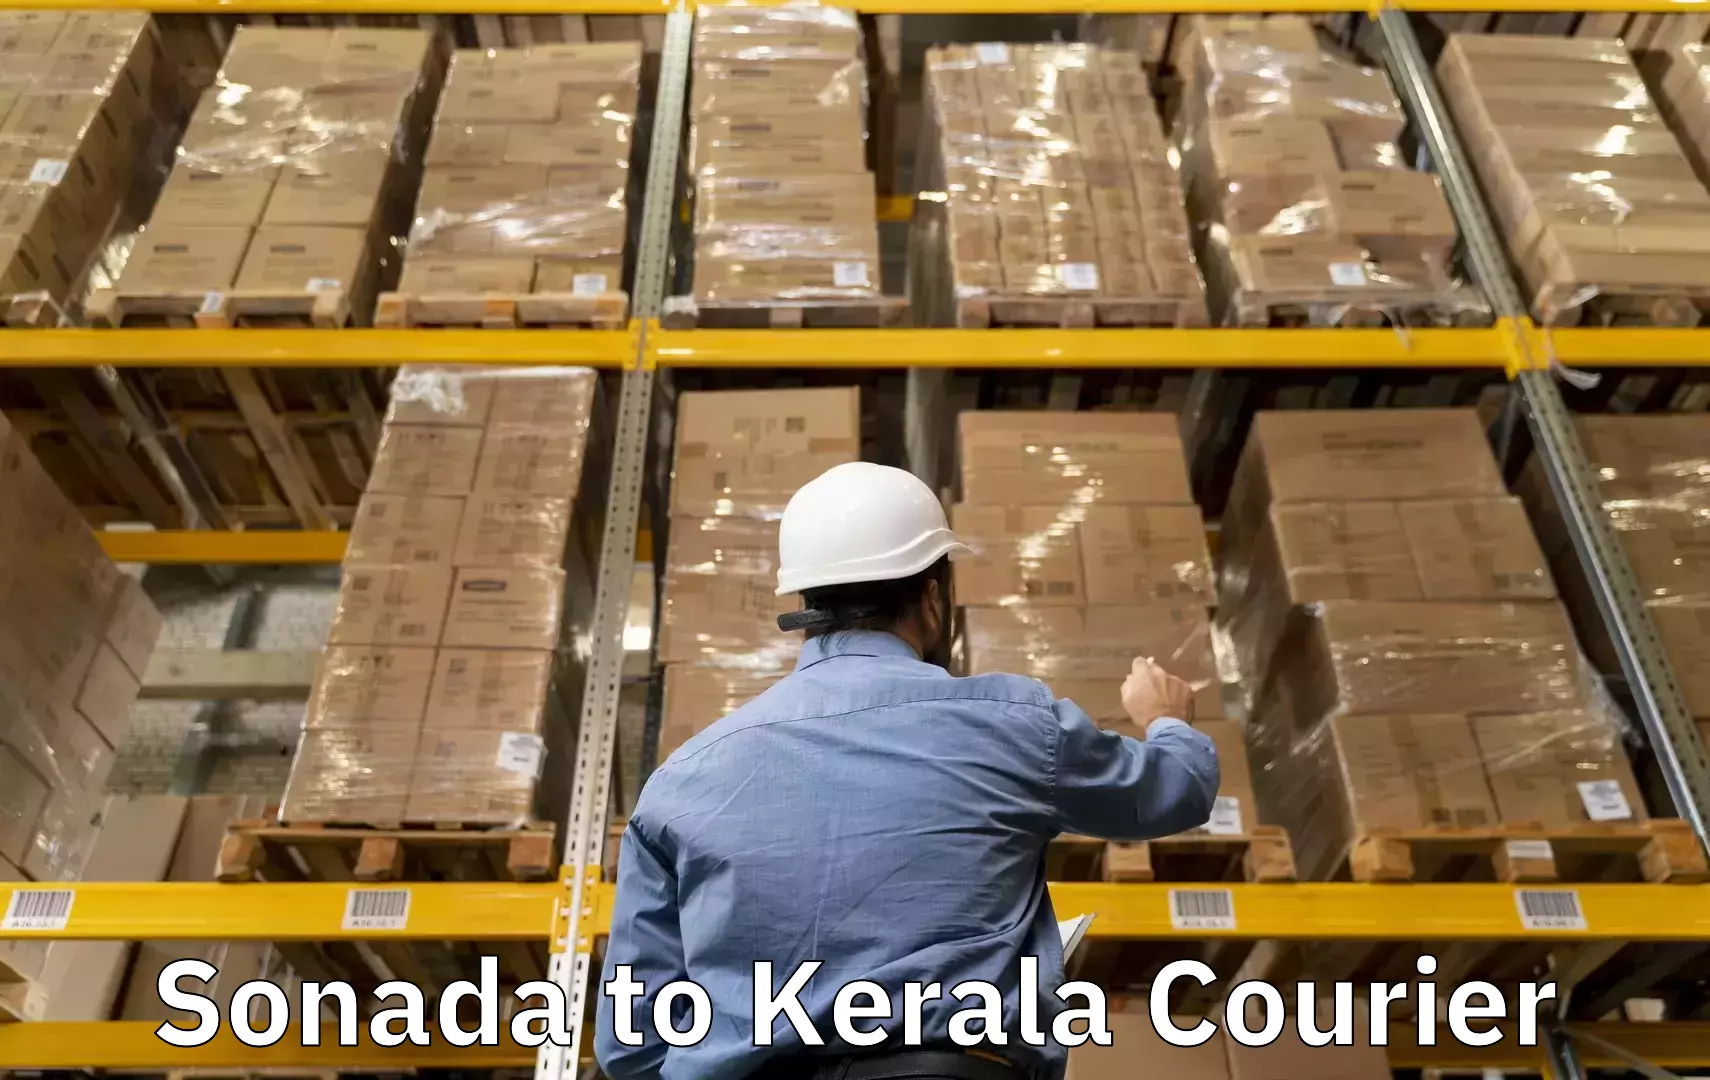 Baggage courier rates calculator Sonada to Cochin Port Kochi